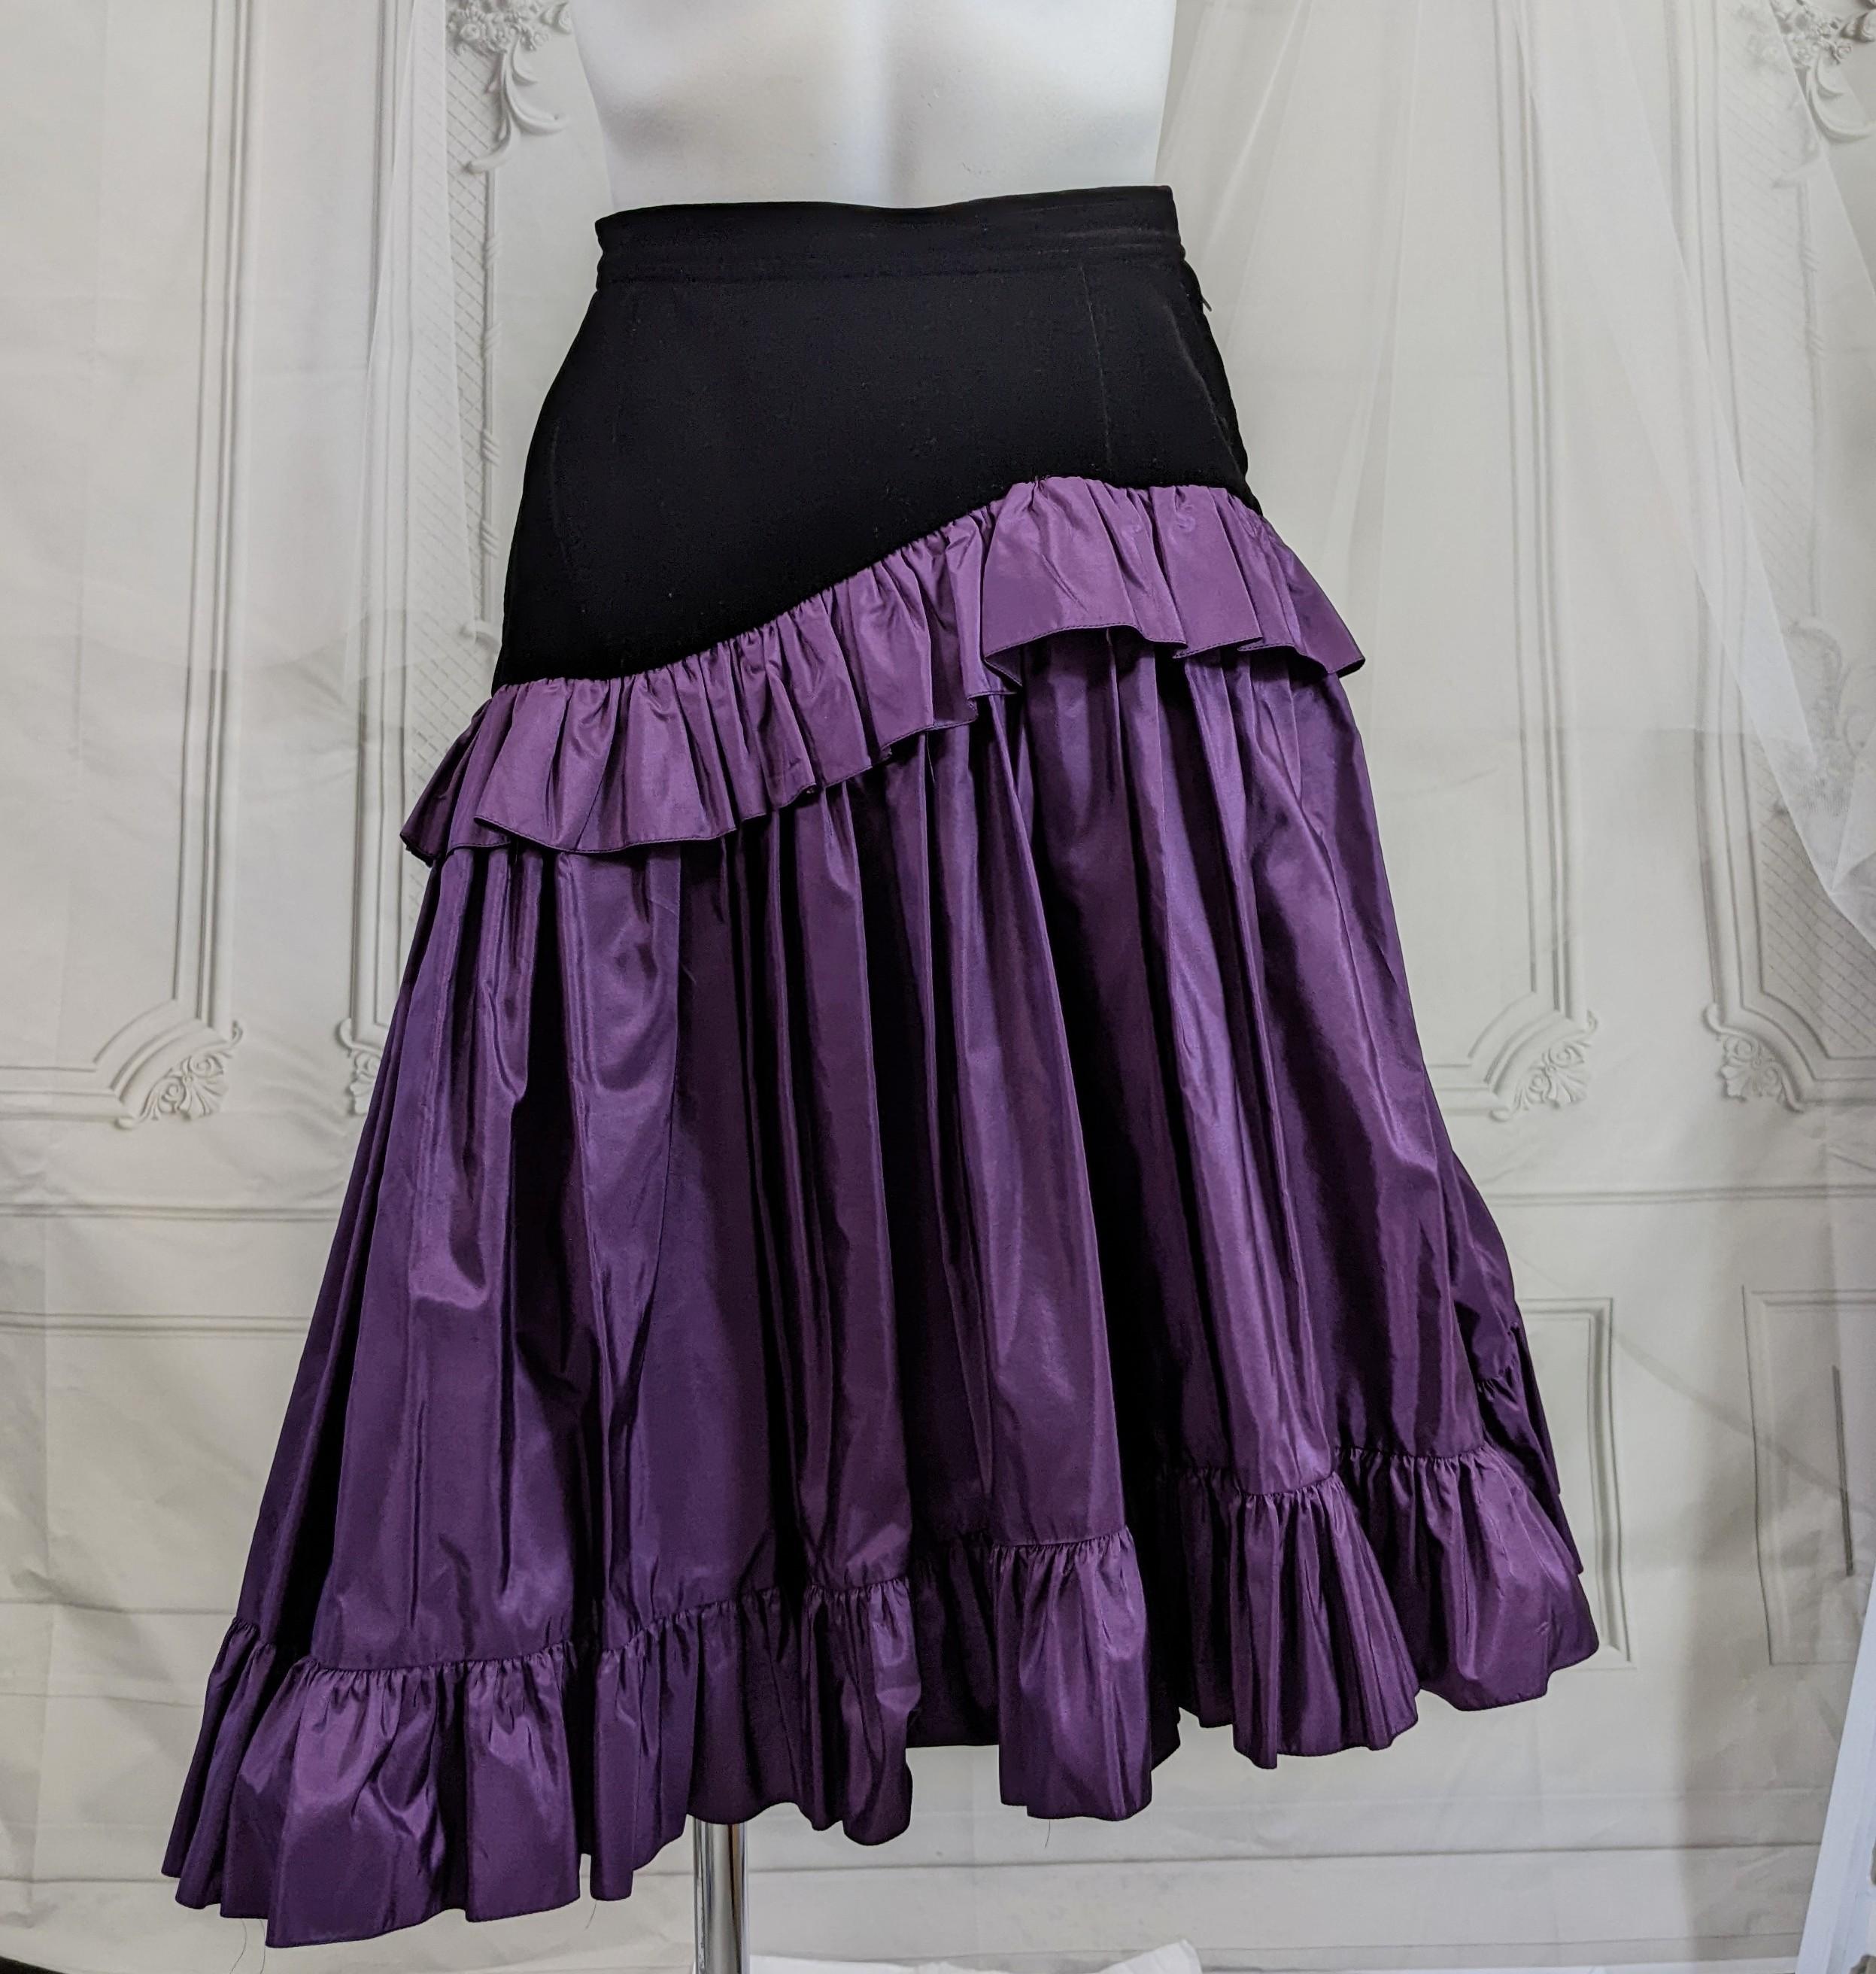 Yves Saint Laurent Velvet and Taffeta Skirt, Russian Collection 1